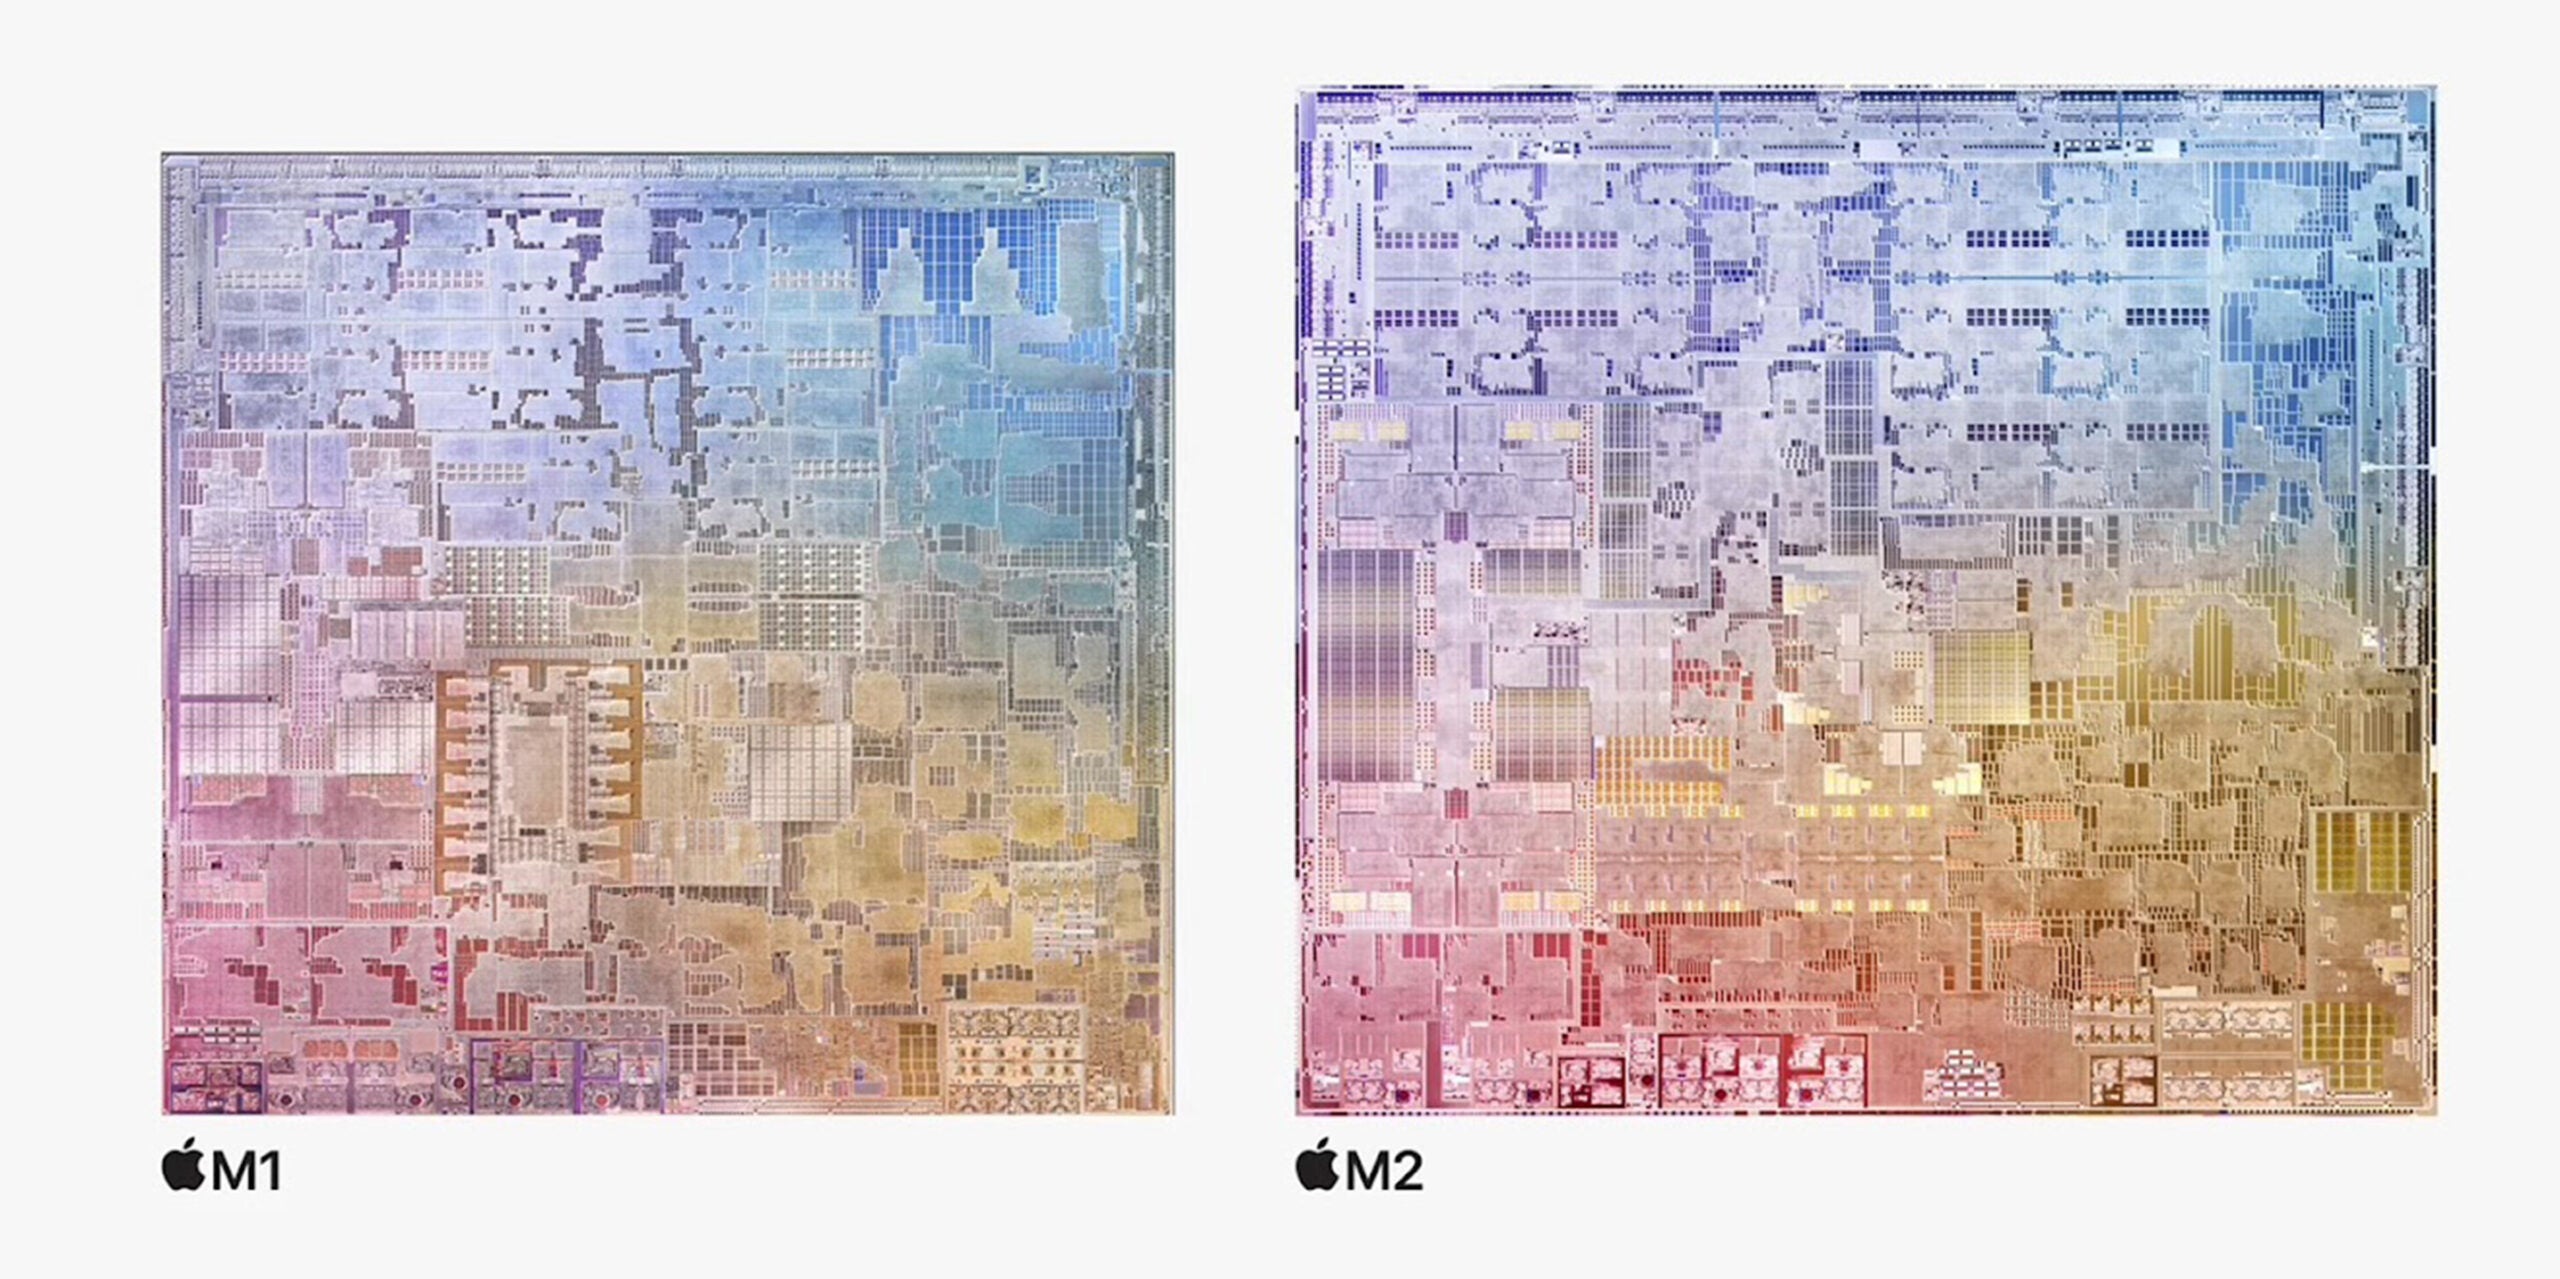 The M2âs 20 billion transistors need more space than the M1âs dimensions